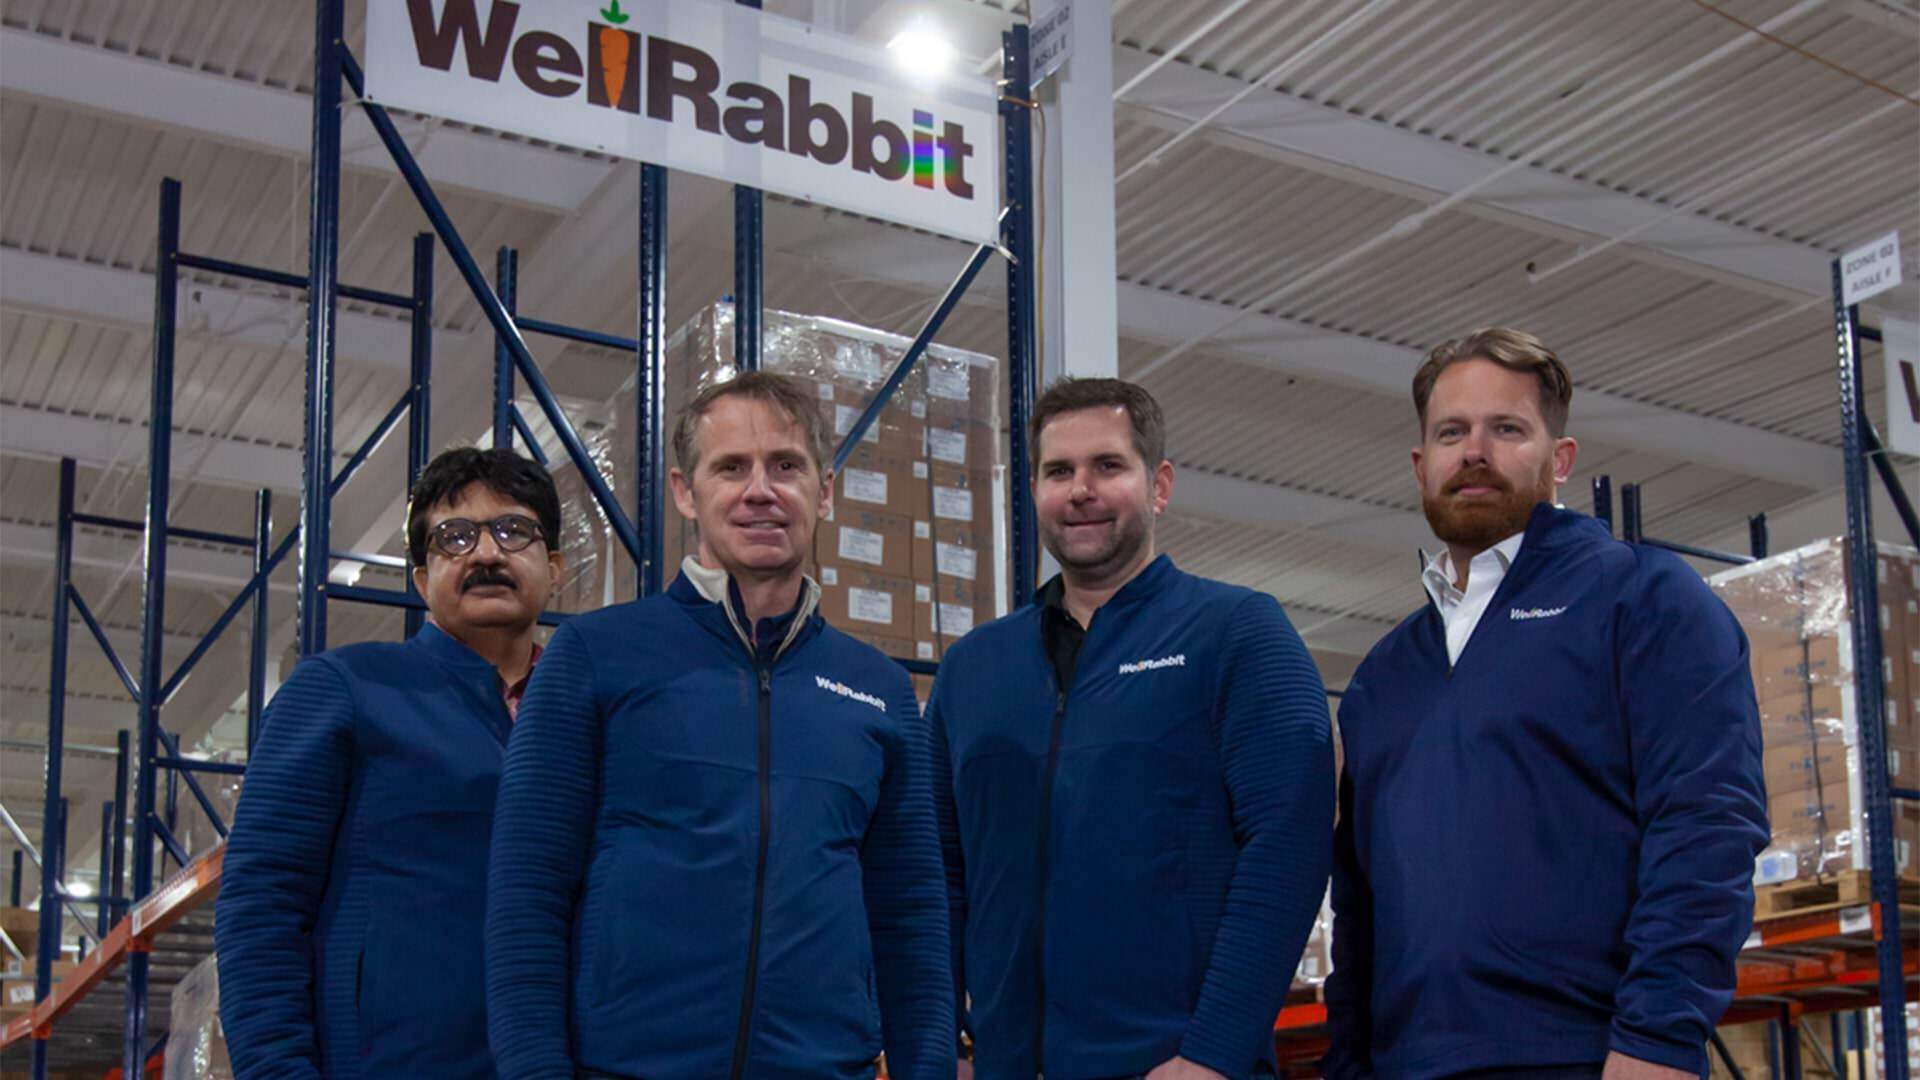 WellRabbit's founders